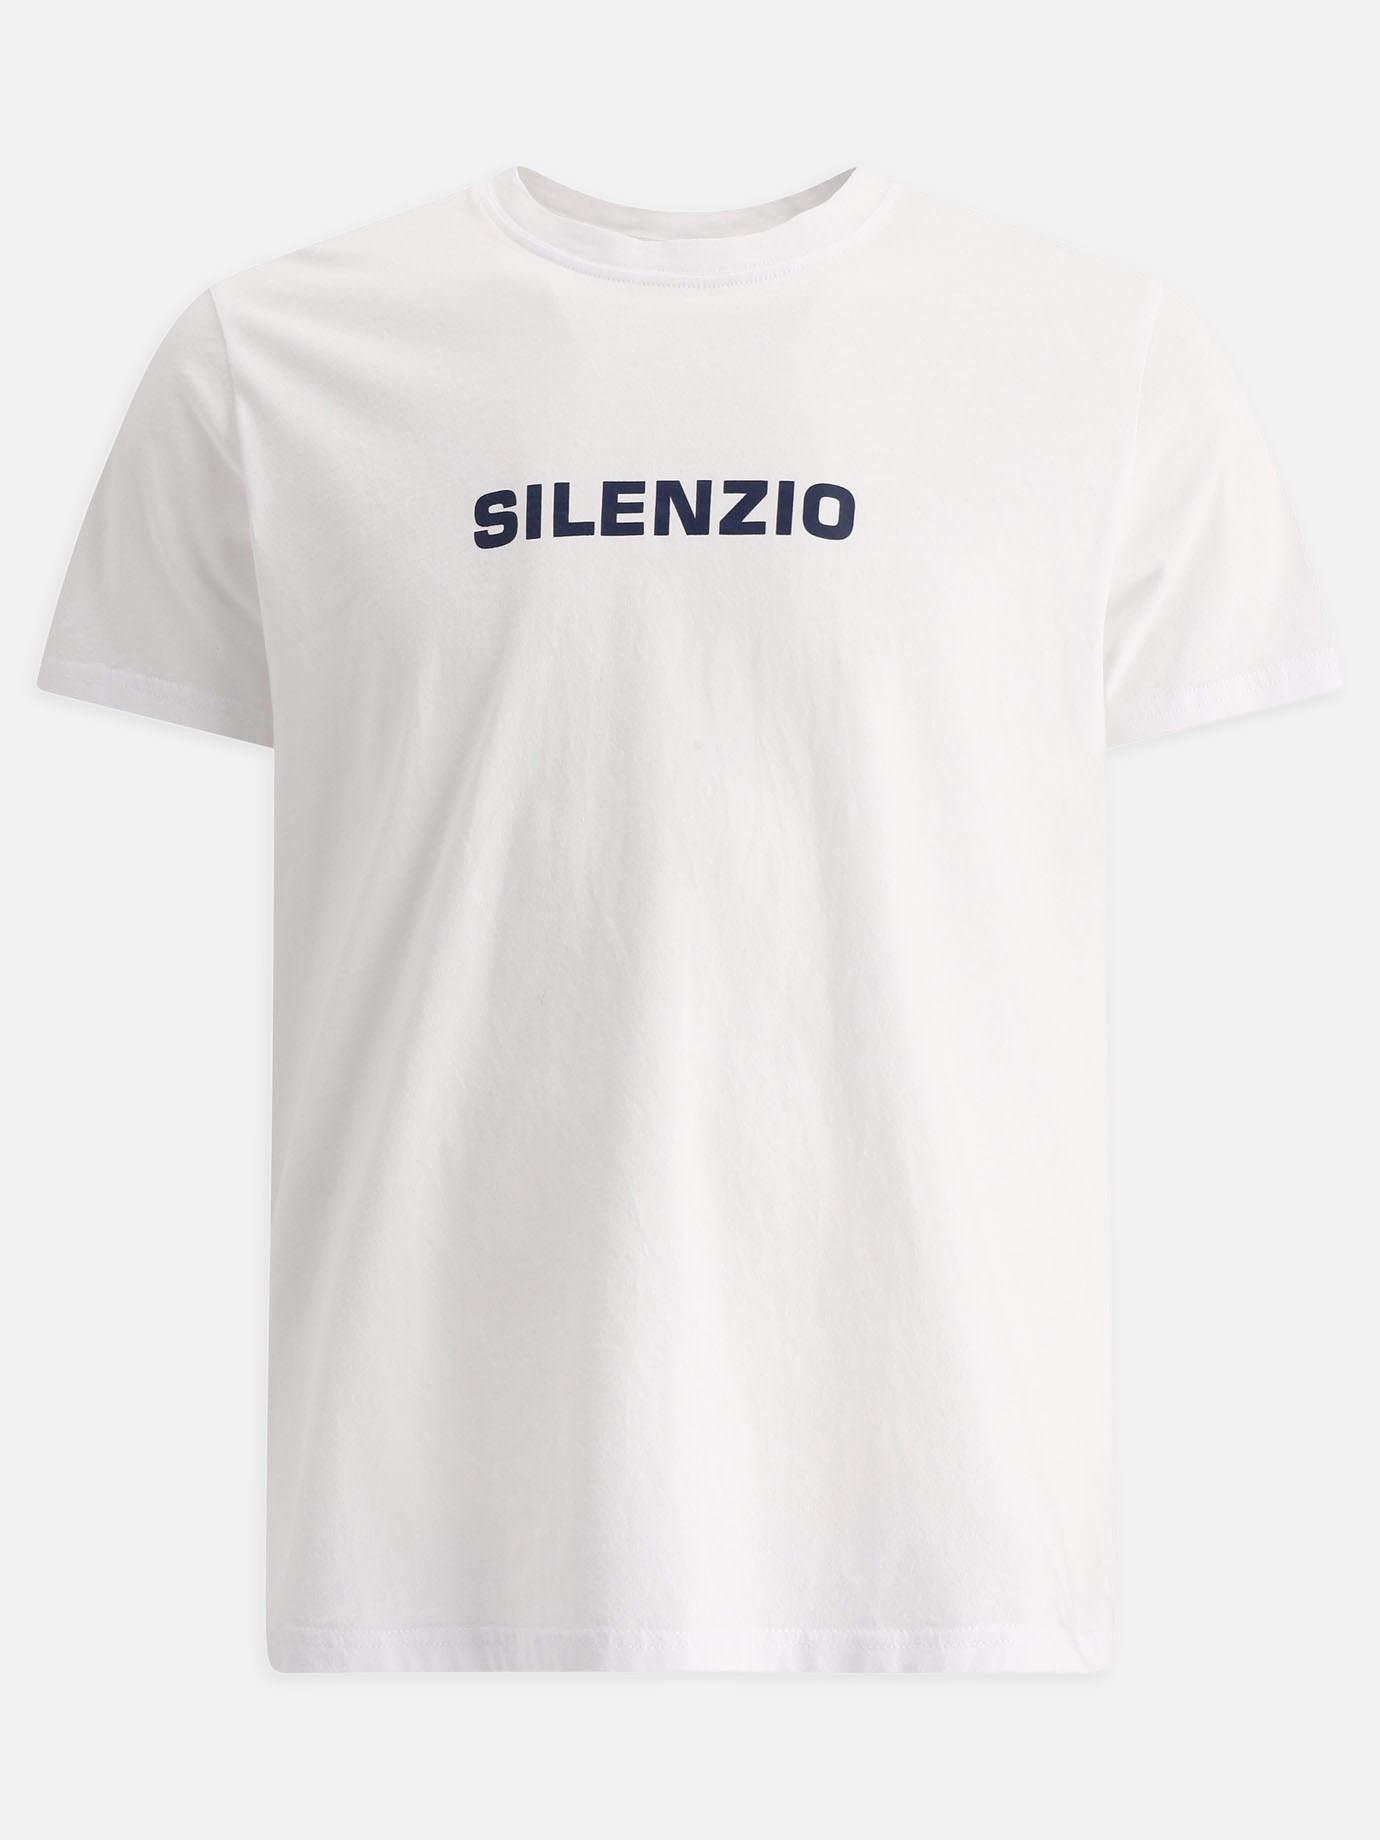  Silenzio  t-shirtby Aspesi - 5